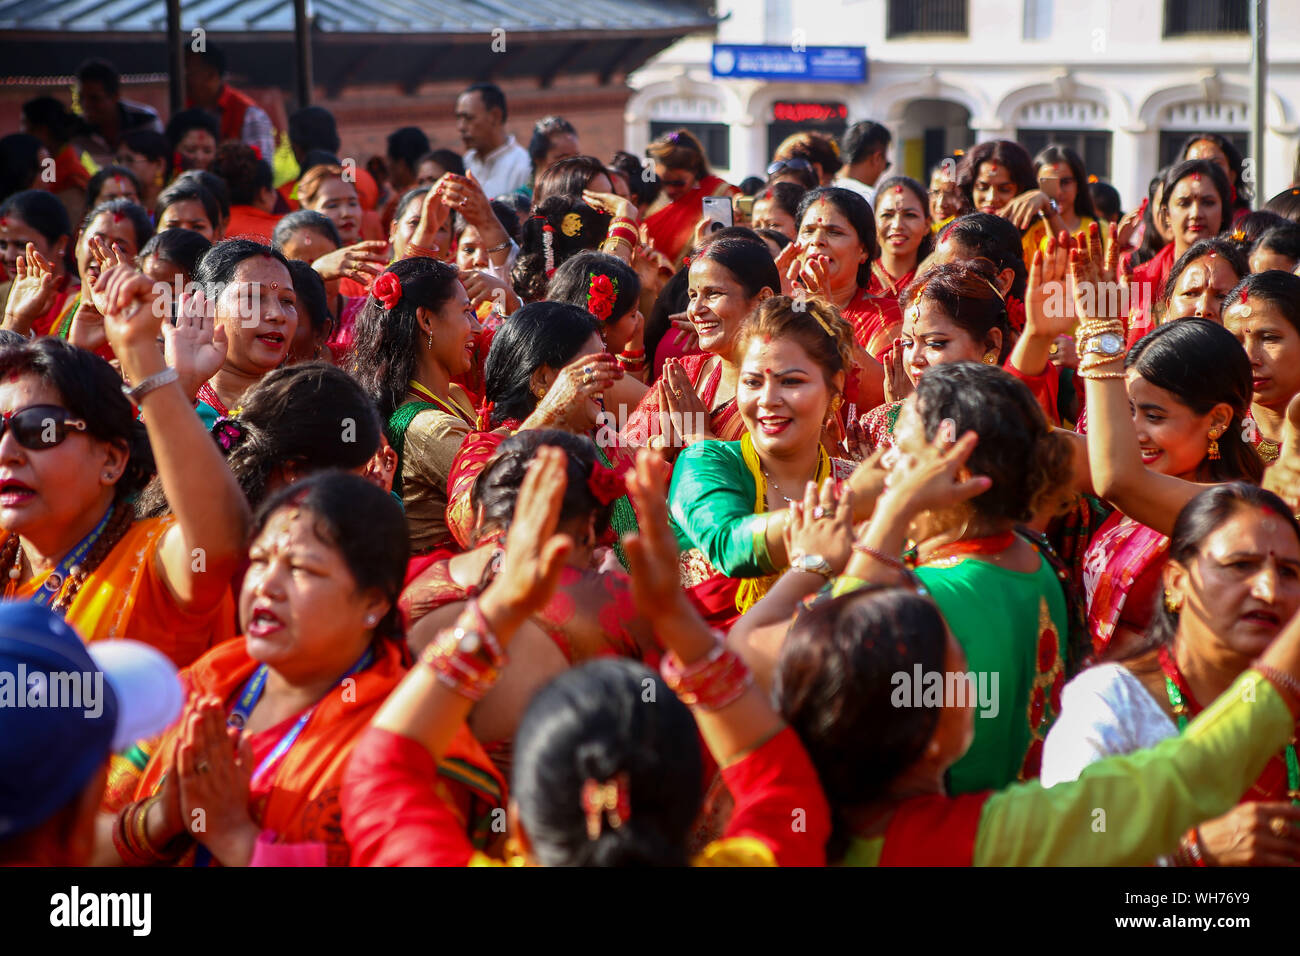 Katmandú, Nepal. 02Nd Sep, 2019. Las mujeres hindúes nepalíes cantar y bailar después de ofrecer plegarias al Señor Shiva, el dios hindú de la destrucción durante el festival.Teej Festival es un festival de sólo mujeres celebrado por las mujeres hindúes. Durante el festival, las mujeres ayunar y orar por el matrimonio y la familia. Las mujeres solteras orar por un auspicioso futuro matrimonio, mientras que las mujeres casadas orar por dicha conyugal. El festival se celebra principalmente en la India, pero las mujeres nepalesas también celebrar Teej en su propia manera especial. Crédito: Sopa de imágenes limitado/Alamy Live News Foto de stock